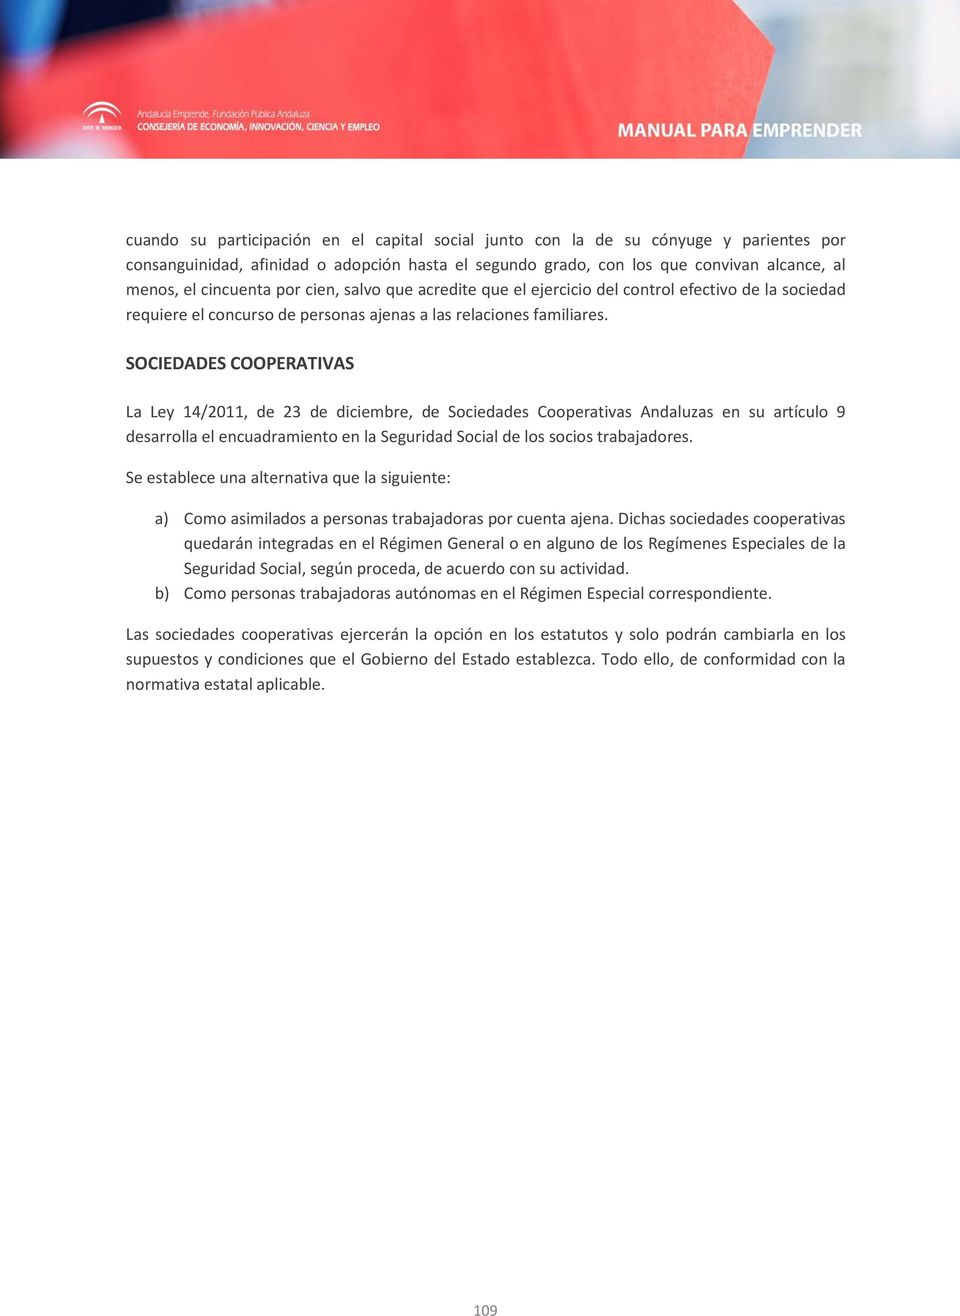 SOCIEDADES COOPERATIVAS La Ley 14/2011, de 23 de diciembre, de Sociedades Cooperativas Andaluzas en su artículo 9 desarrolla el encuadramiento en la Seguridad Social de los socios trabajadores.